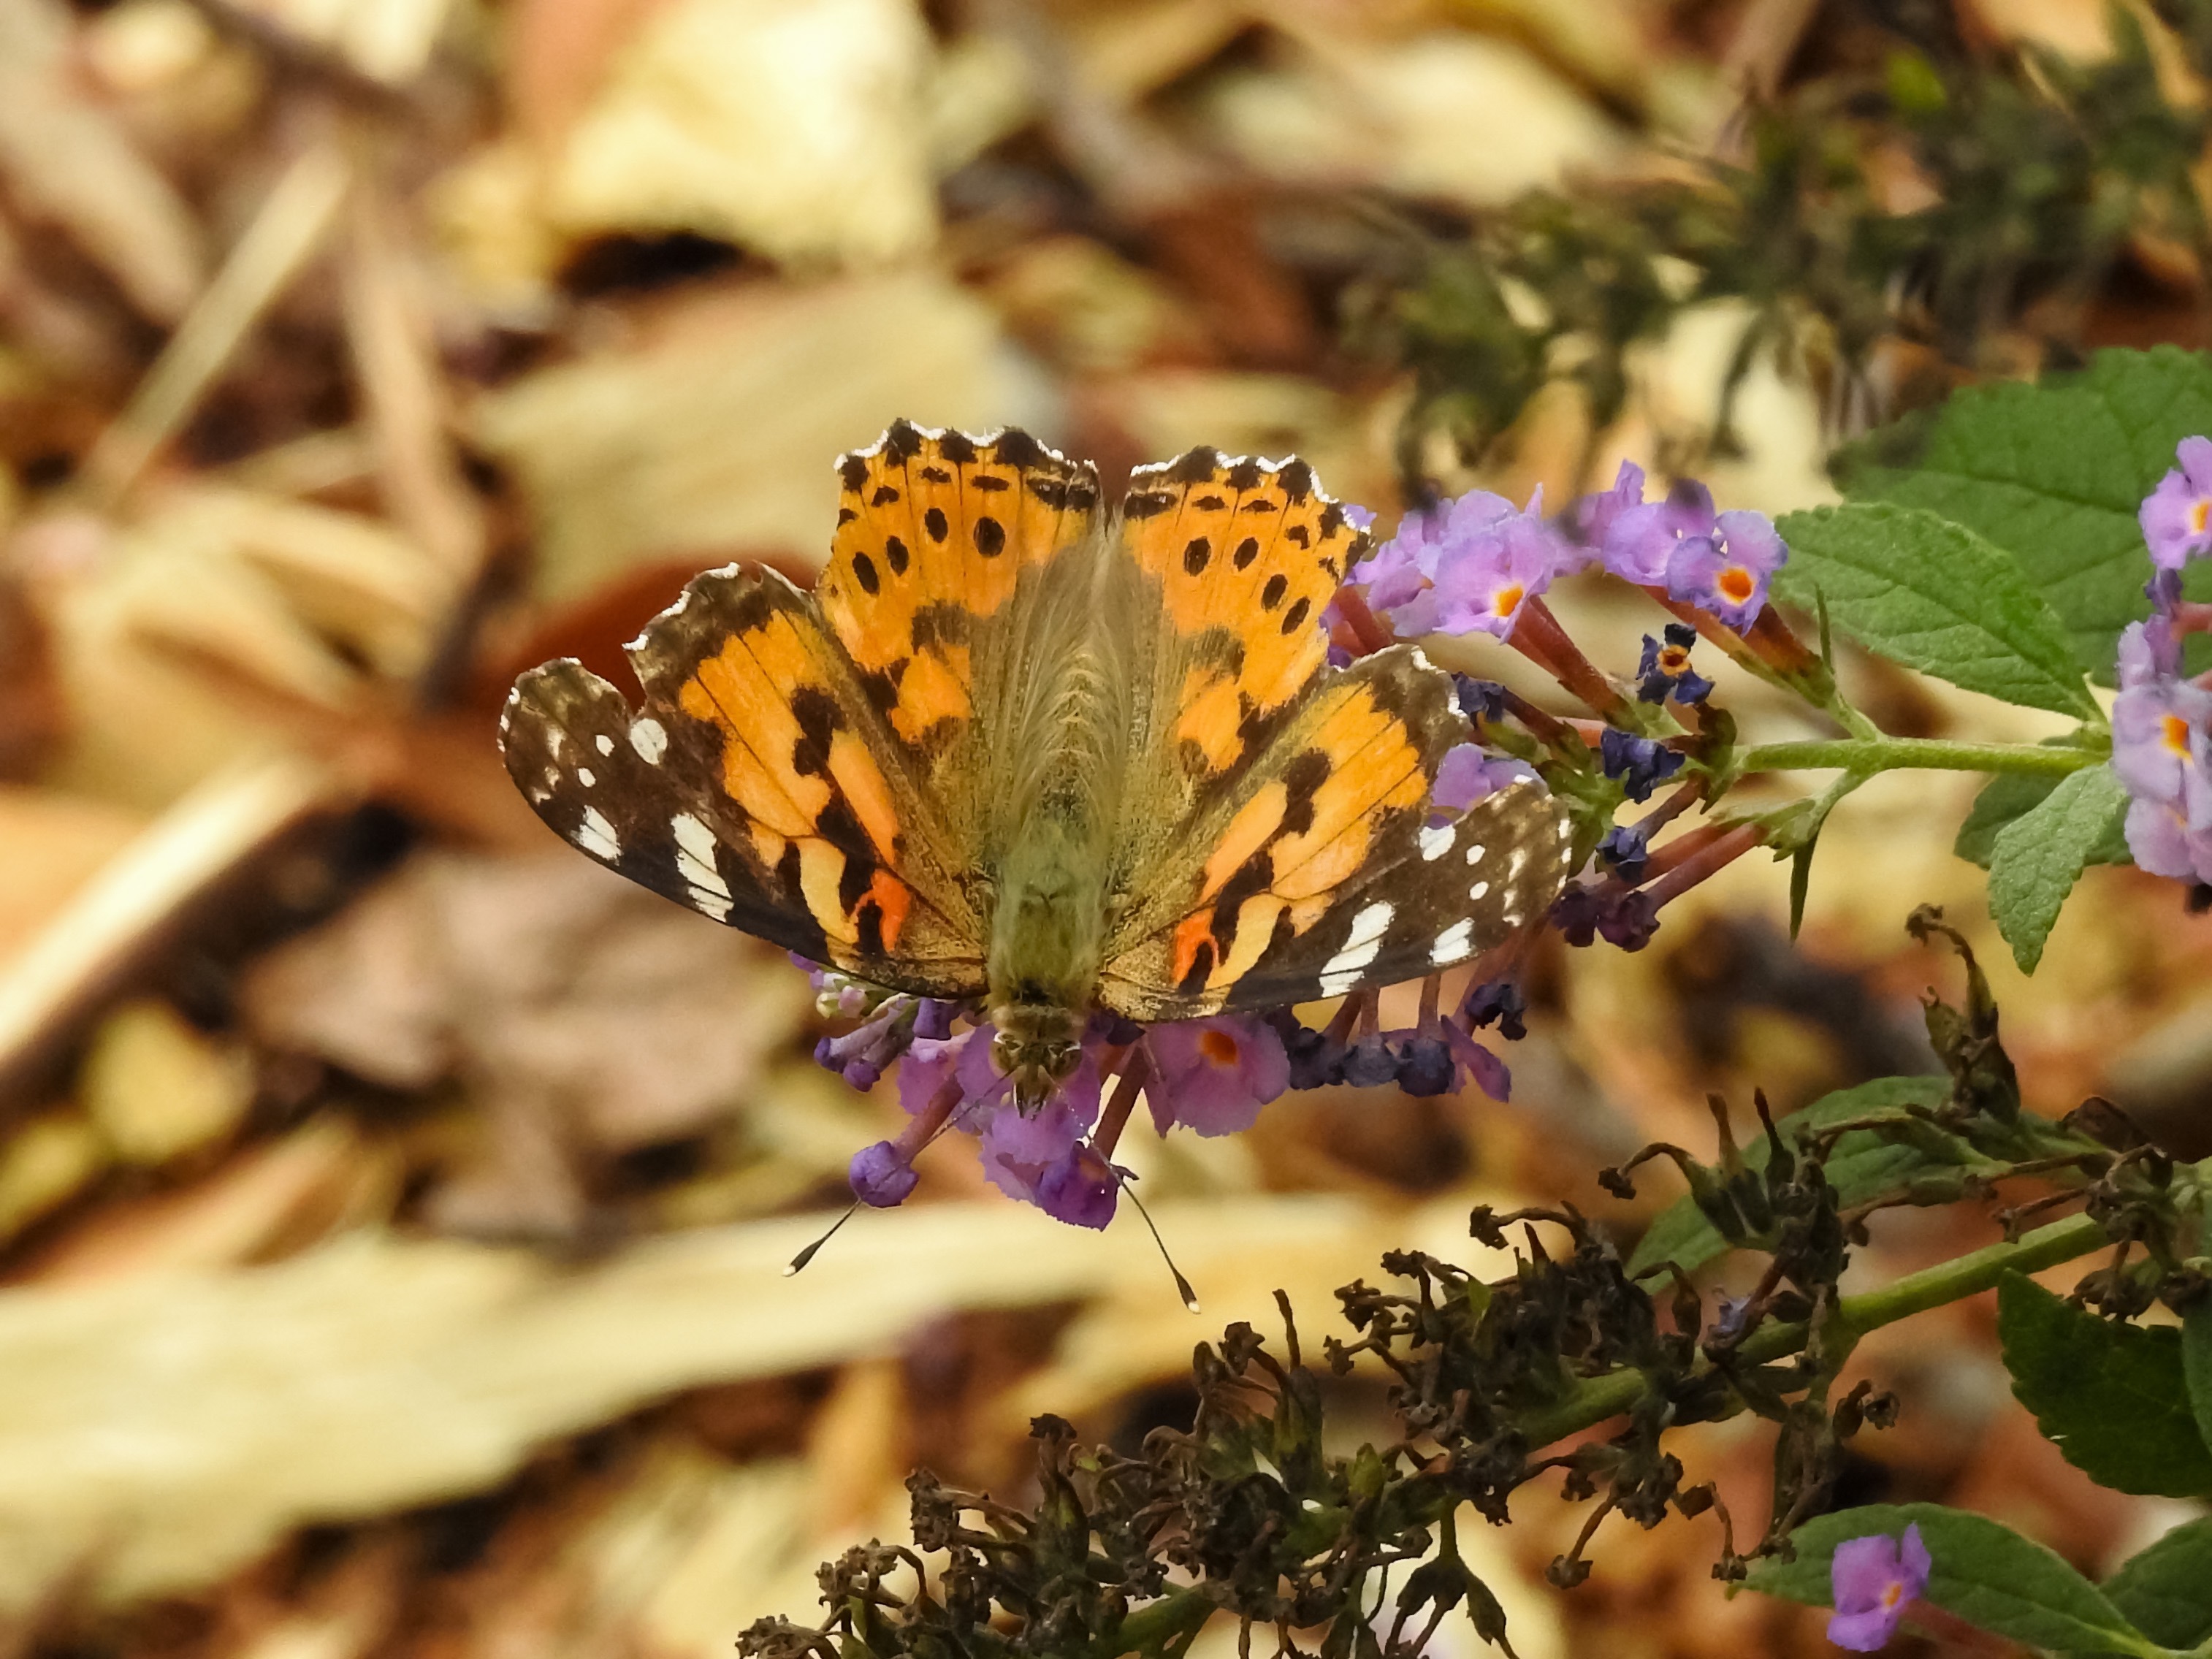 Arkansas Butterflies and Moths by Lori A. Spencer